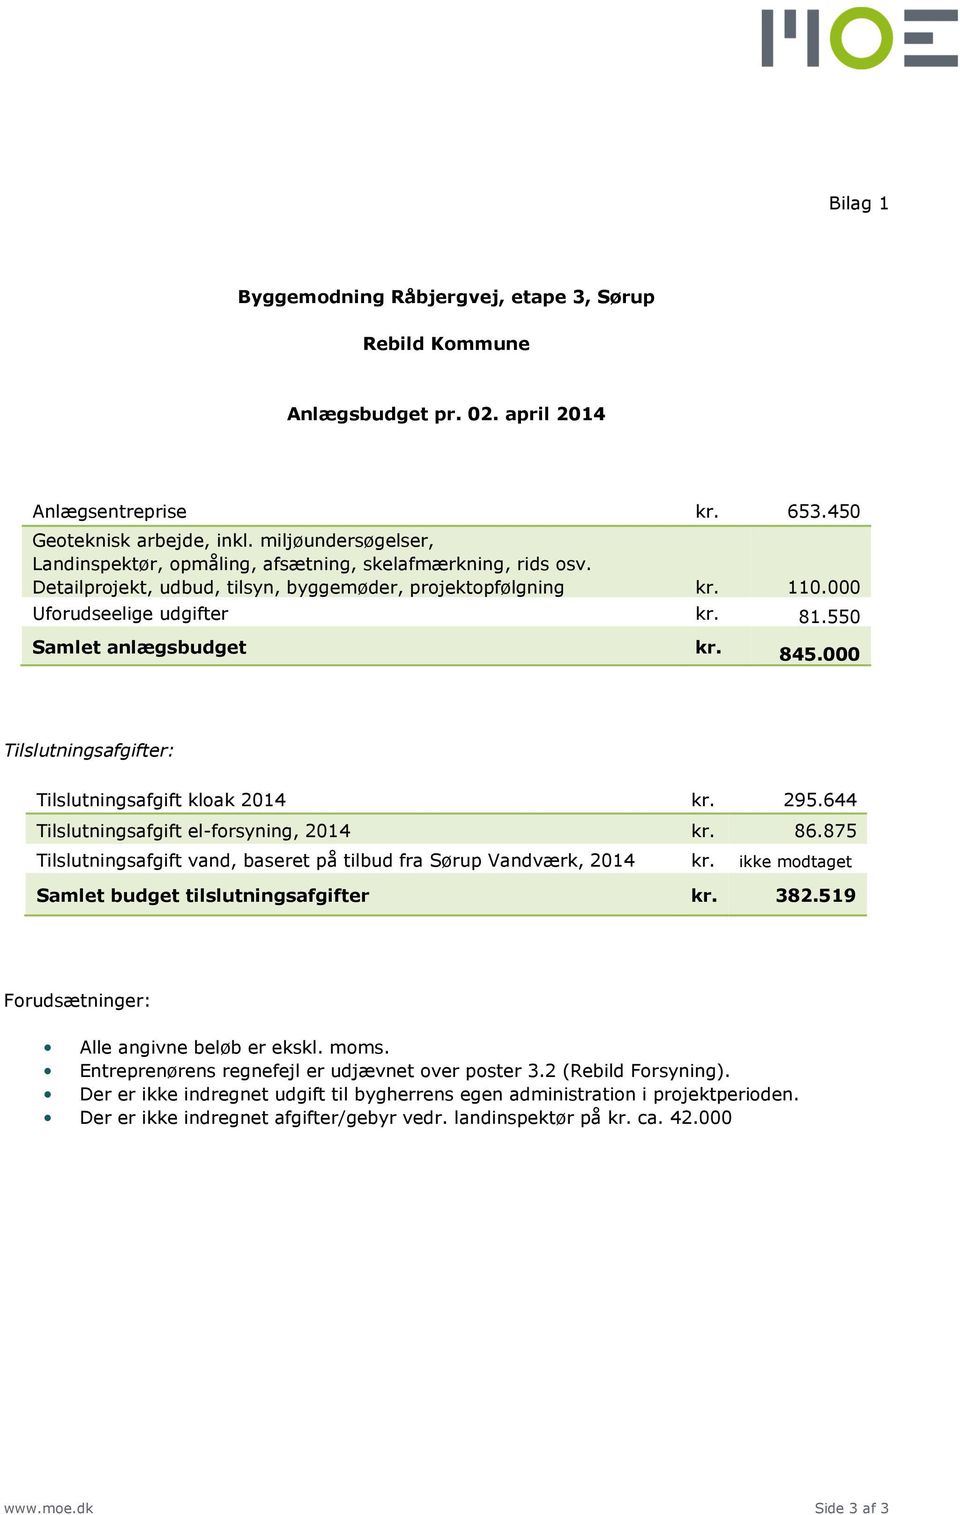 644 Tilslutningsafgift el-forsyning, 2014 kr. 86.875 Tilslutningsafgift vand, baseret på tilbud fra Sørup Vandværk, 2014 kr. ikke modtaget Samlet budget tilslutningsafgifter kr. 382.